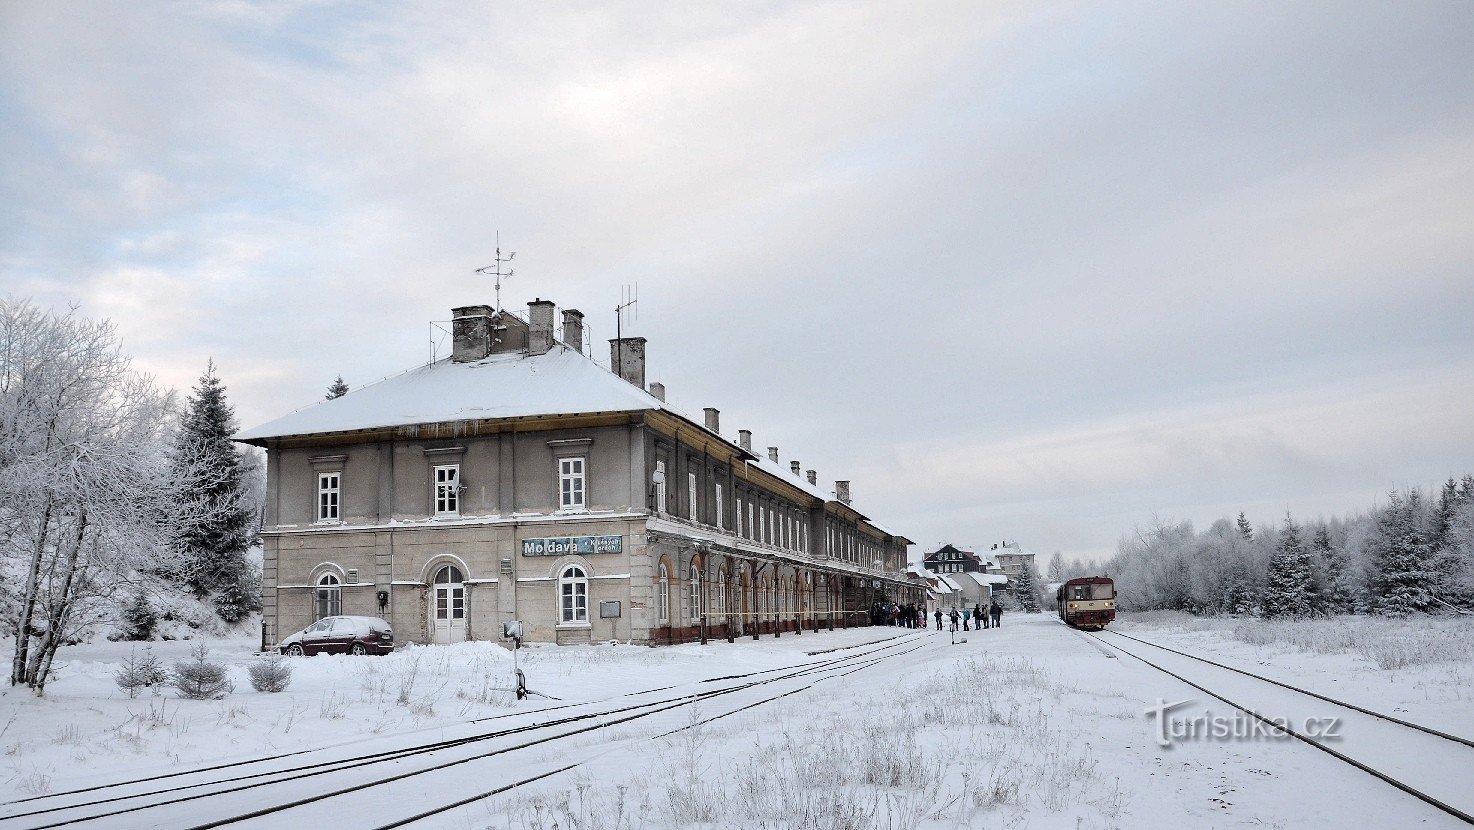 Железнодорожная станция Молдавии в Крушных горах